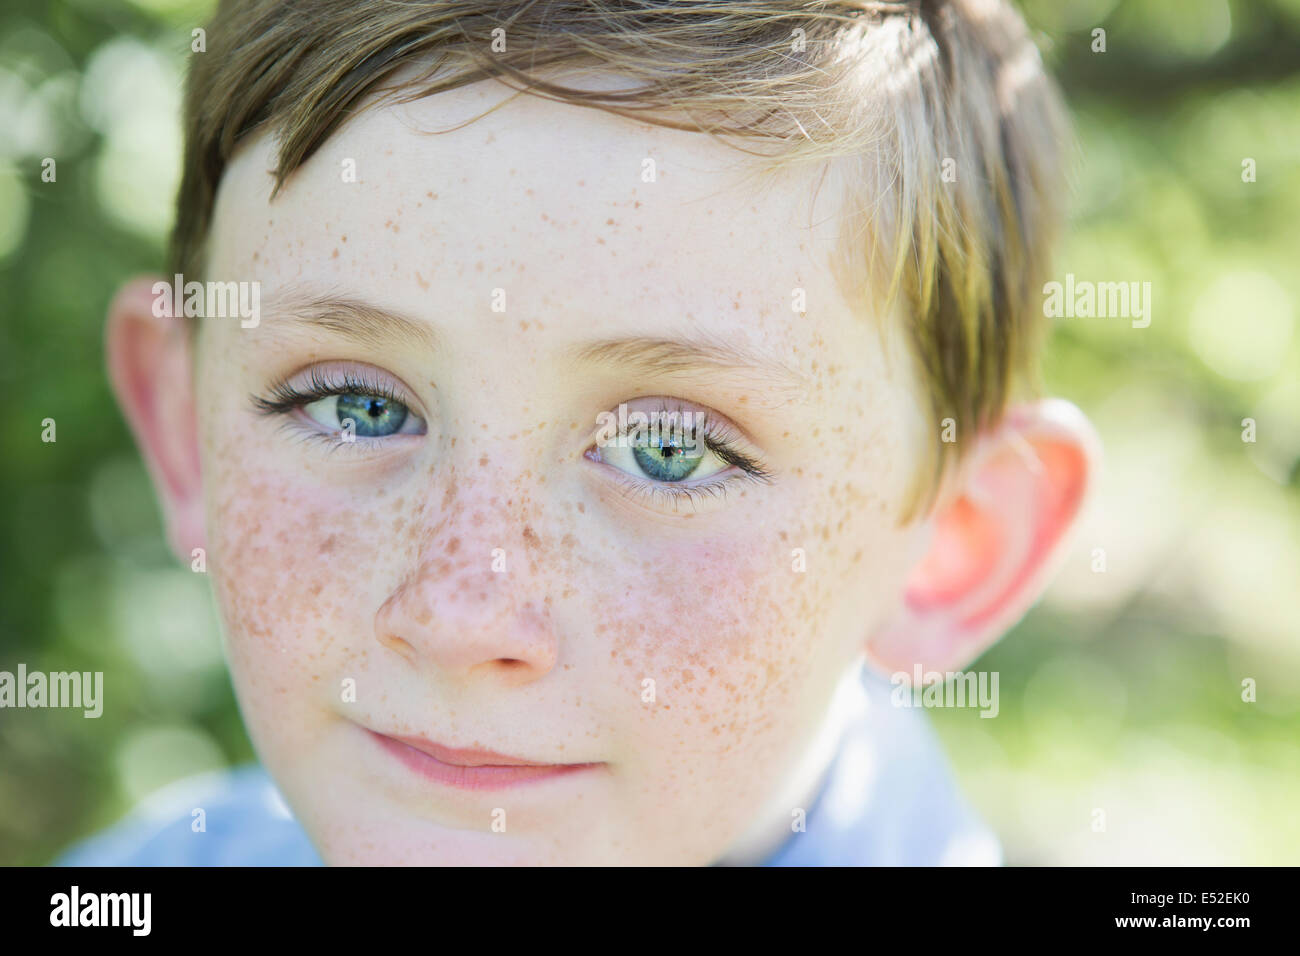 Portrait d'un jeune garçon aux cheveux rouges, des yeux bleus et des taches de rousseur sur son nez. Banque D'Images